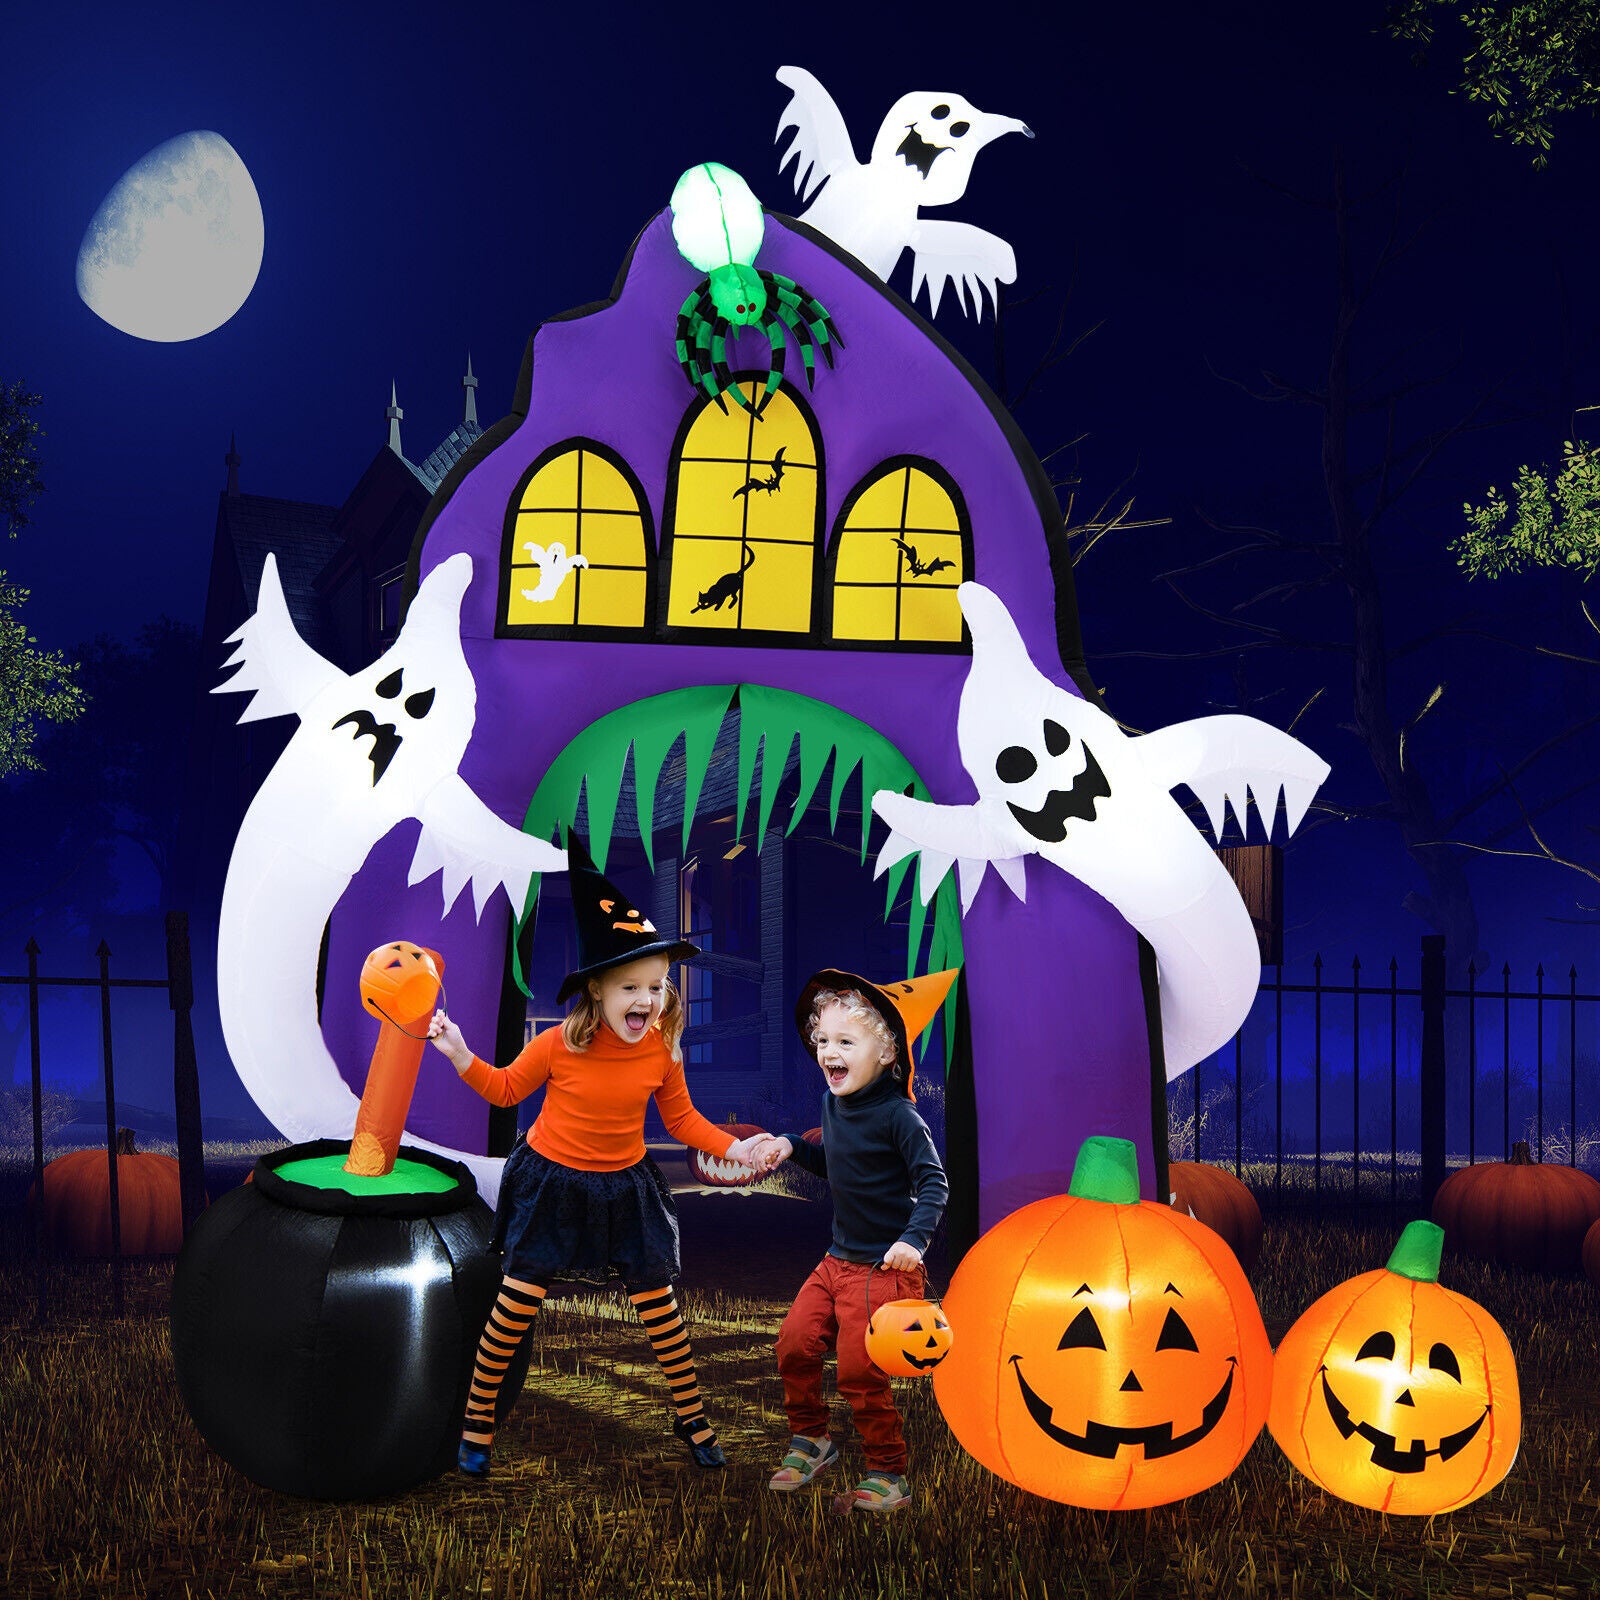 Halloween décor - 9 Ft Tall Halloween Inflatable Castle Archway Decor